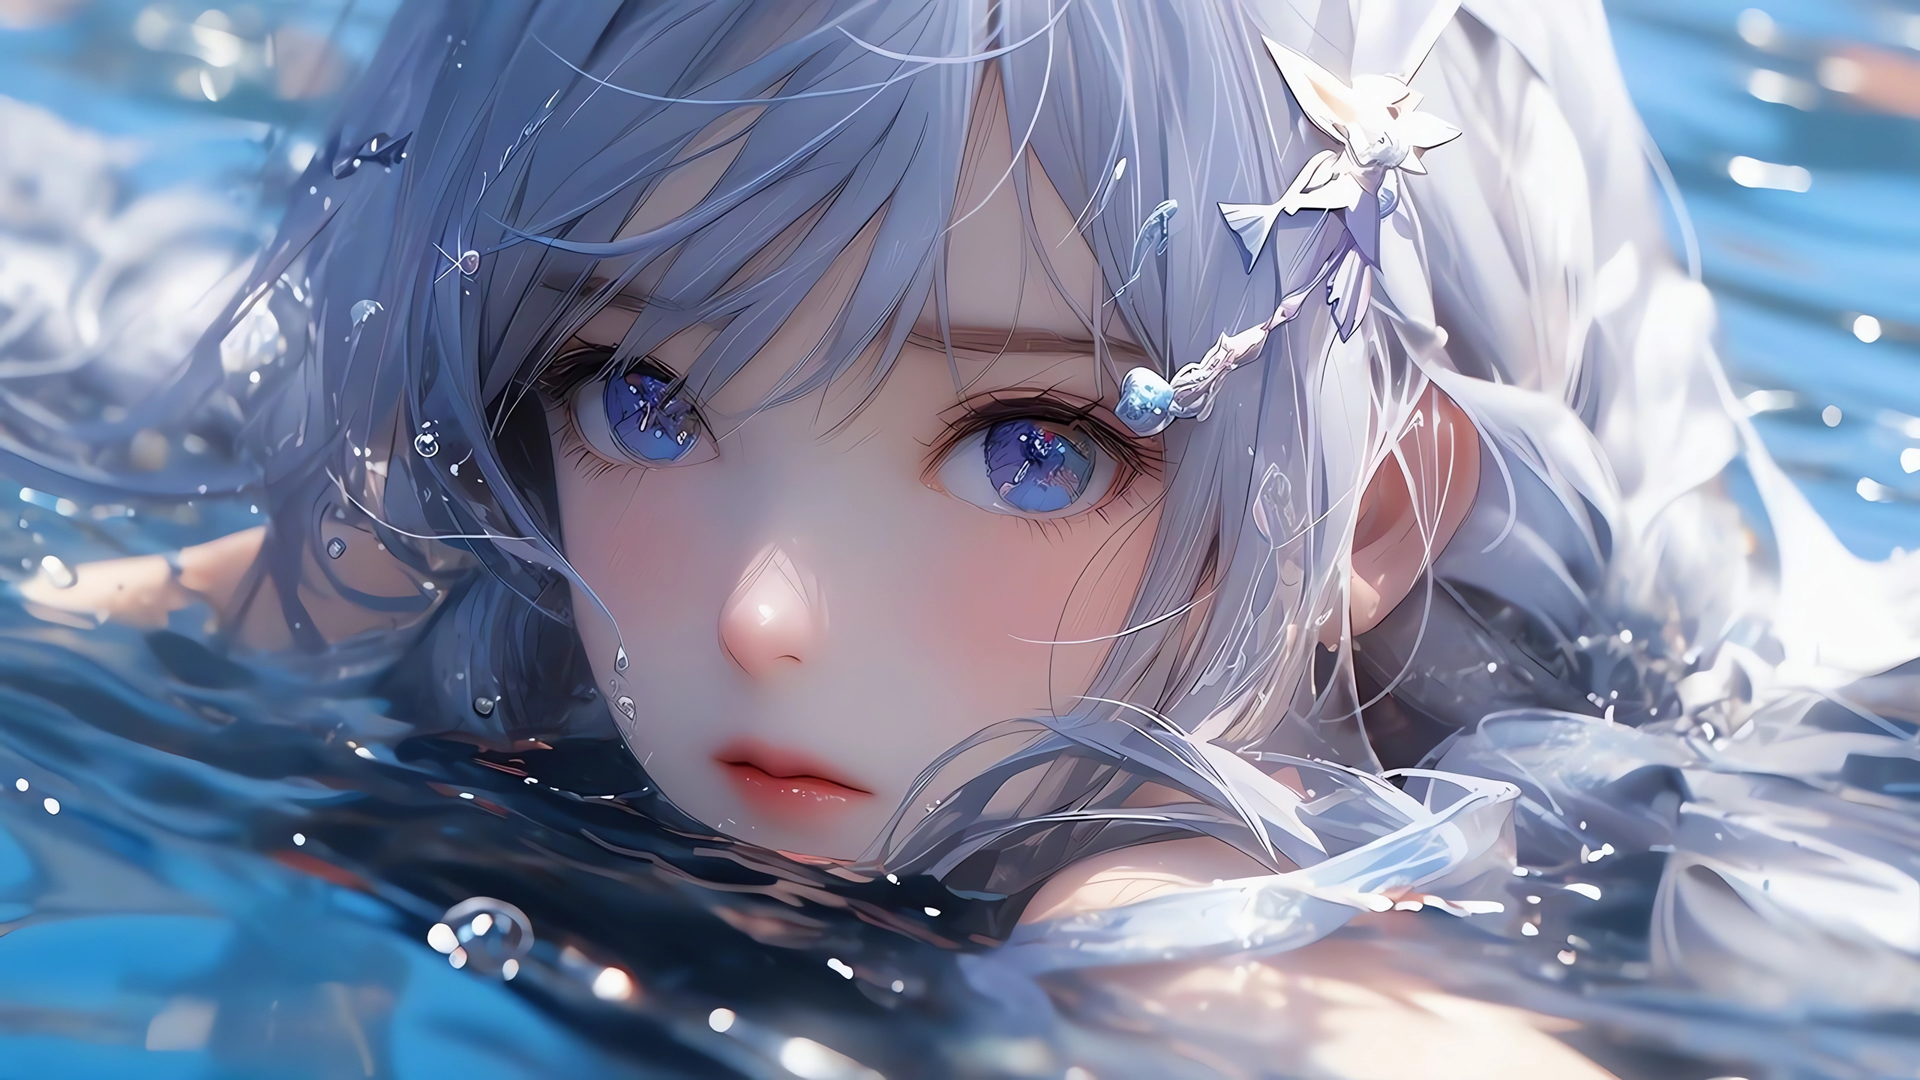 壁纸 : 动漫女孩, Vocaloid, 初音未来, 长发, 蓝头发, 蓝眼睛, 水下 1842x2189 - LucasFiala ...